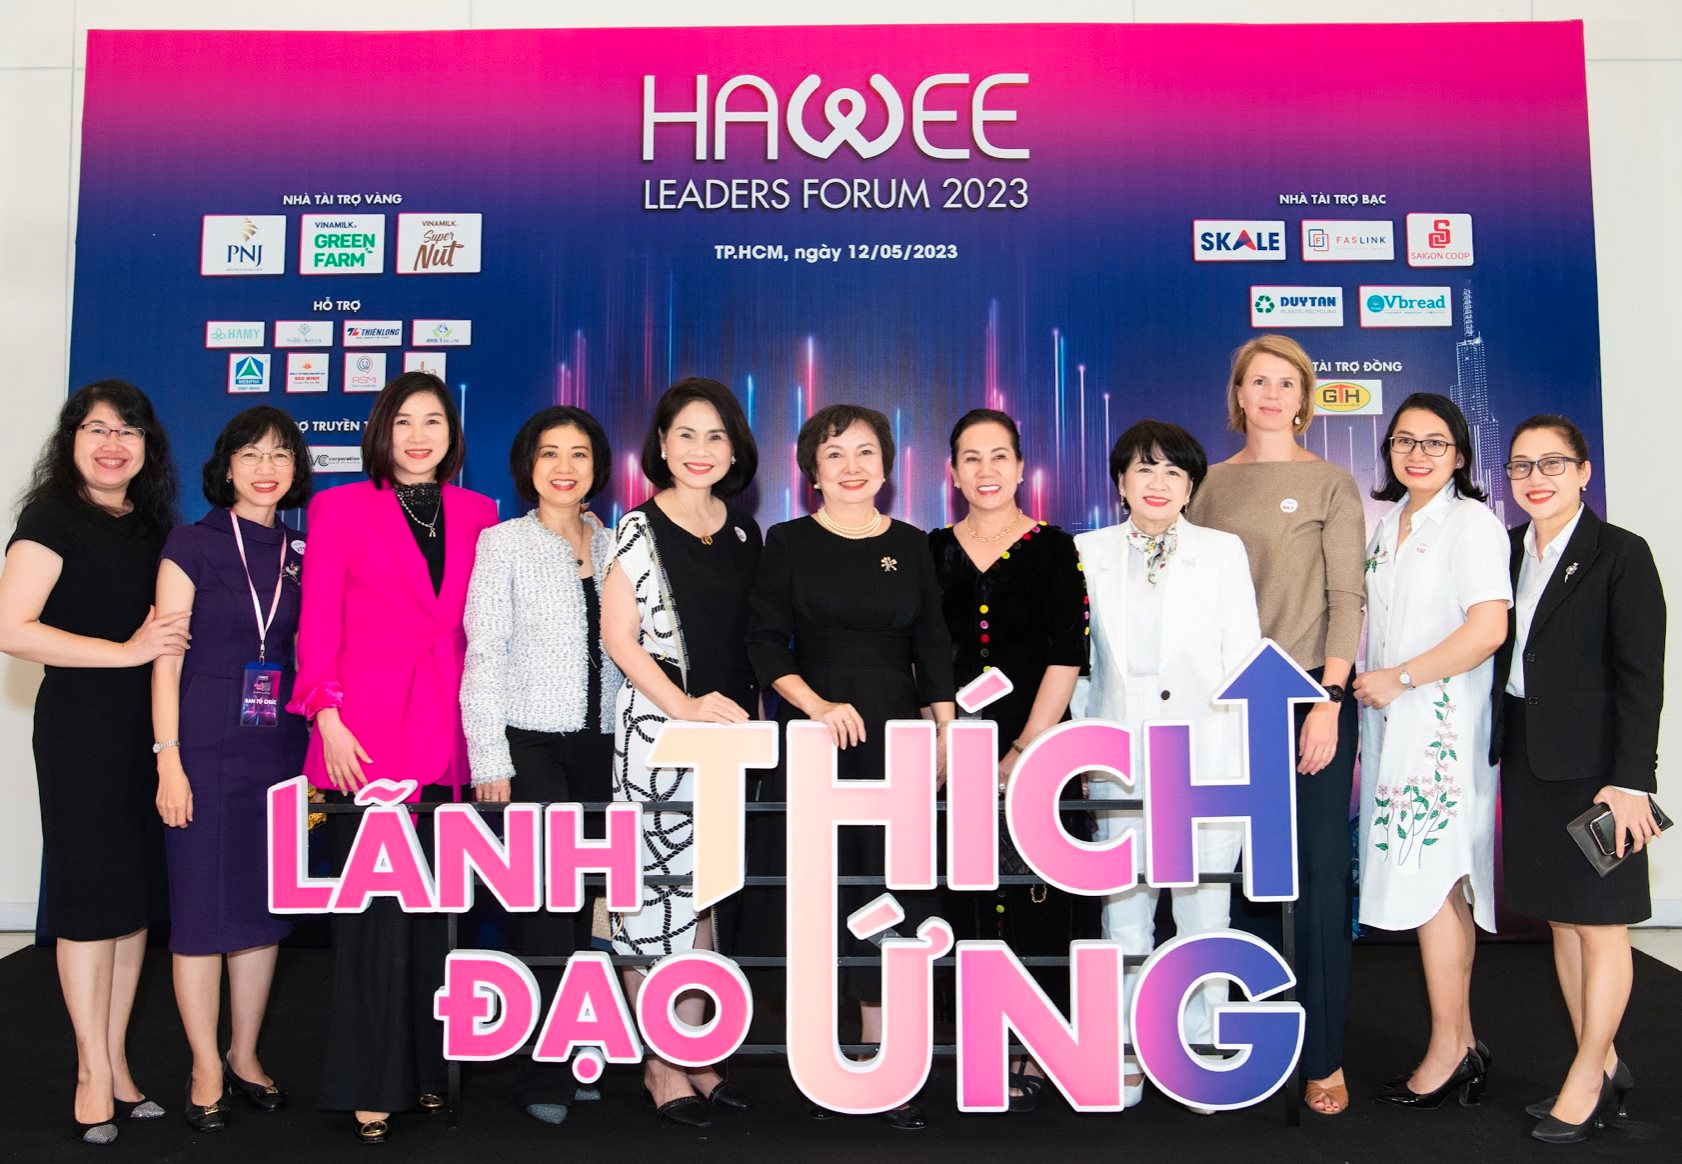 HAWEE Leader's Forum 2023: “Lãnh đạo thích ứng với nhân viên, tập thể mới có thể cùng nhau phát triển vững mạnh” - Ảnh 5.